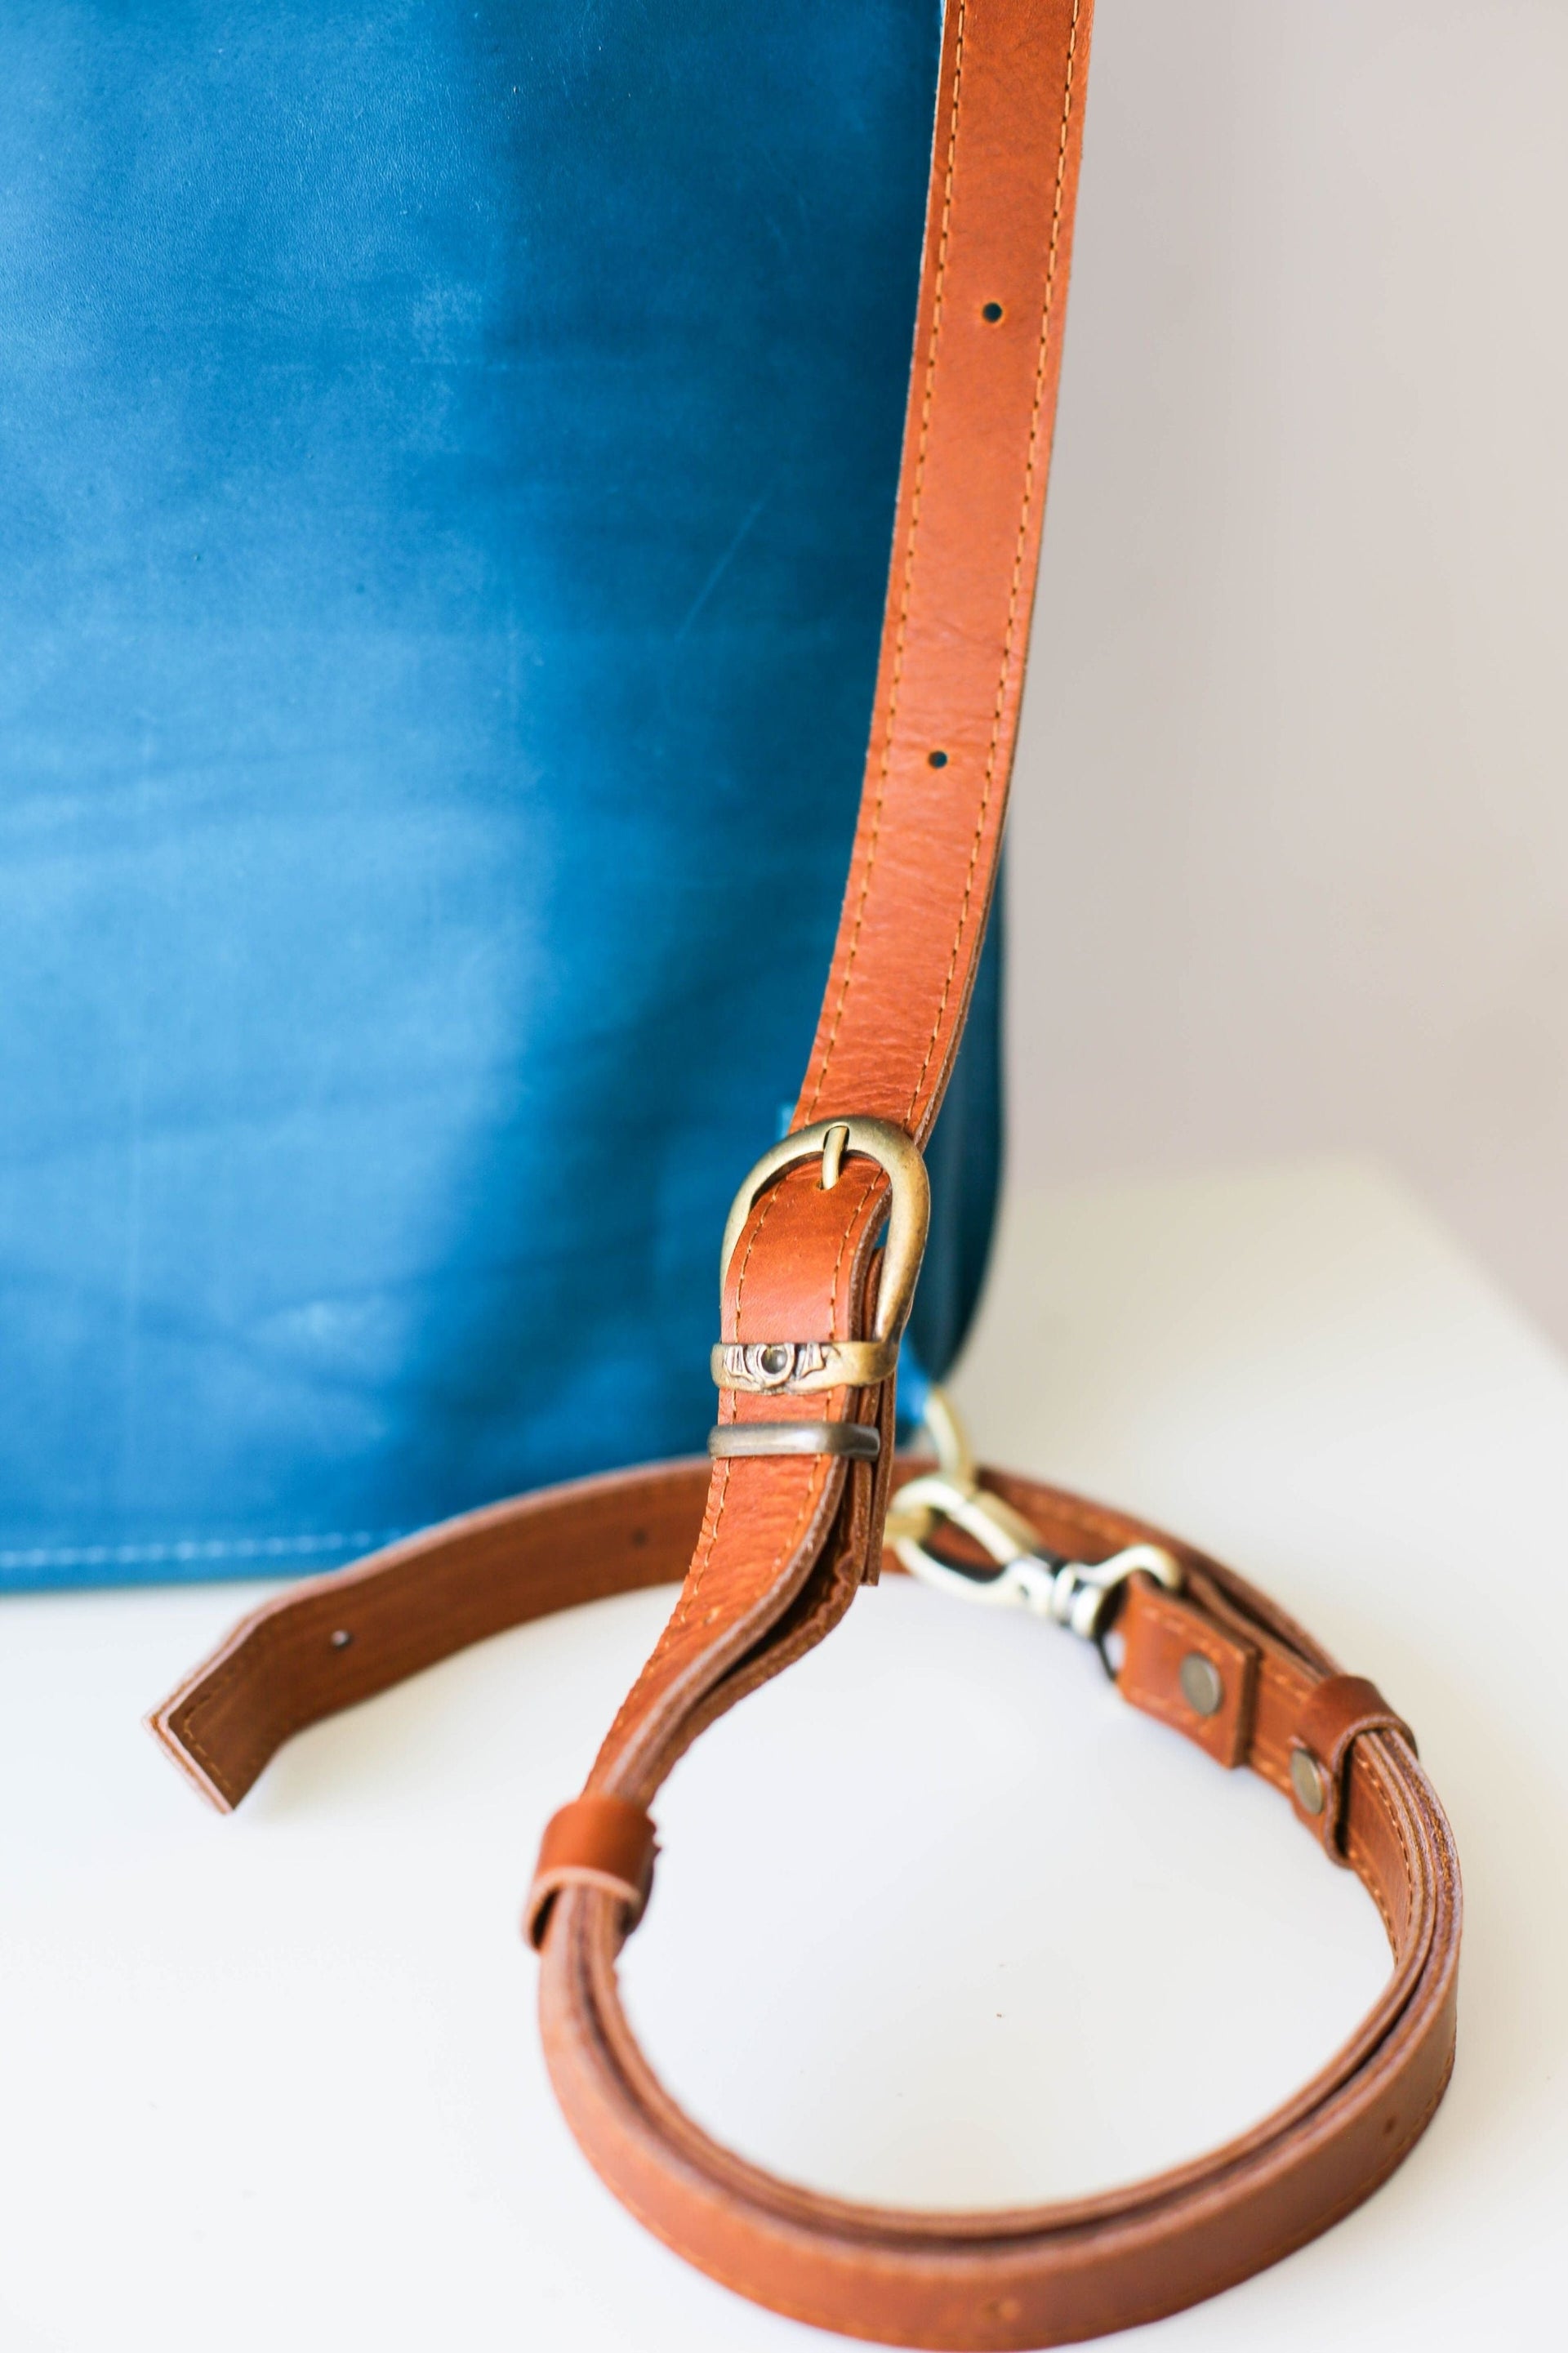 Blue leather purse